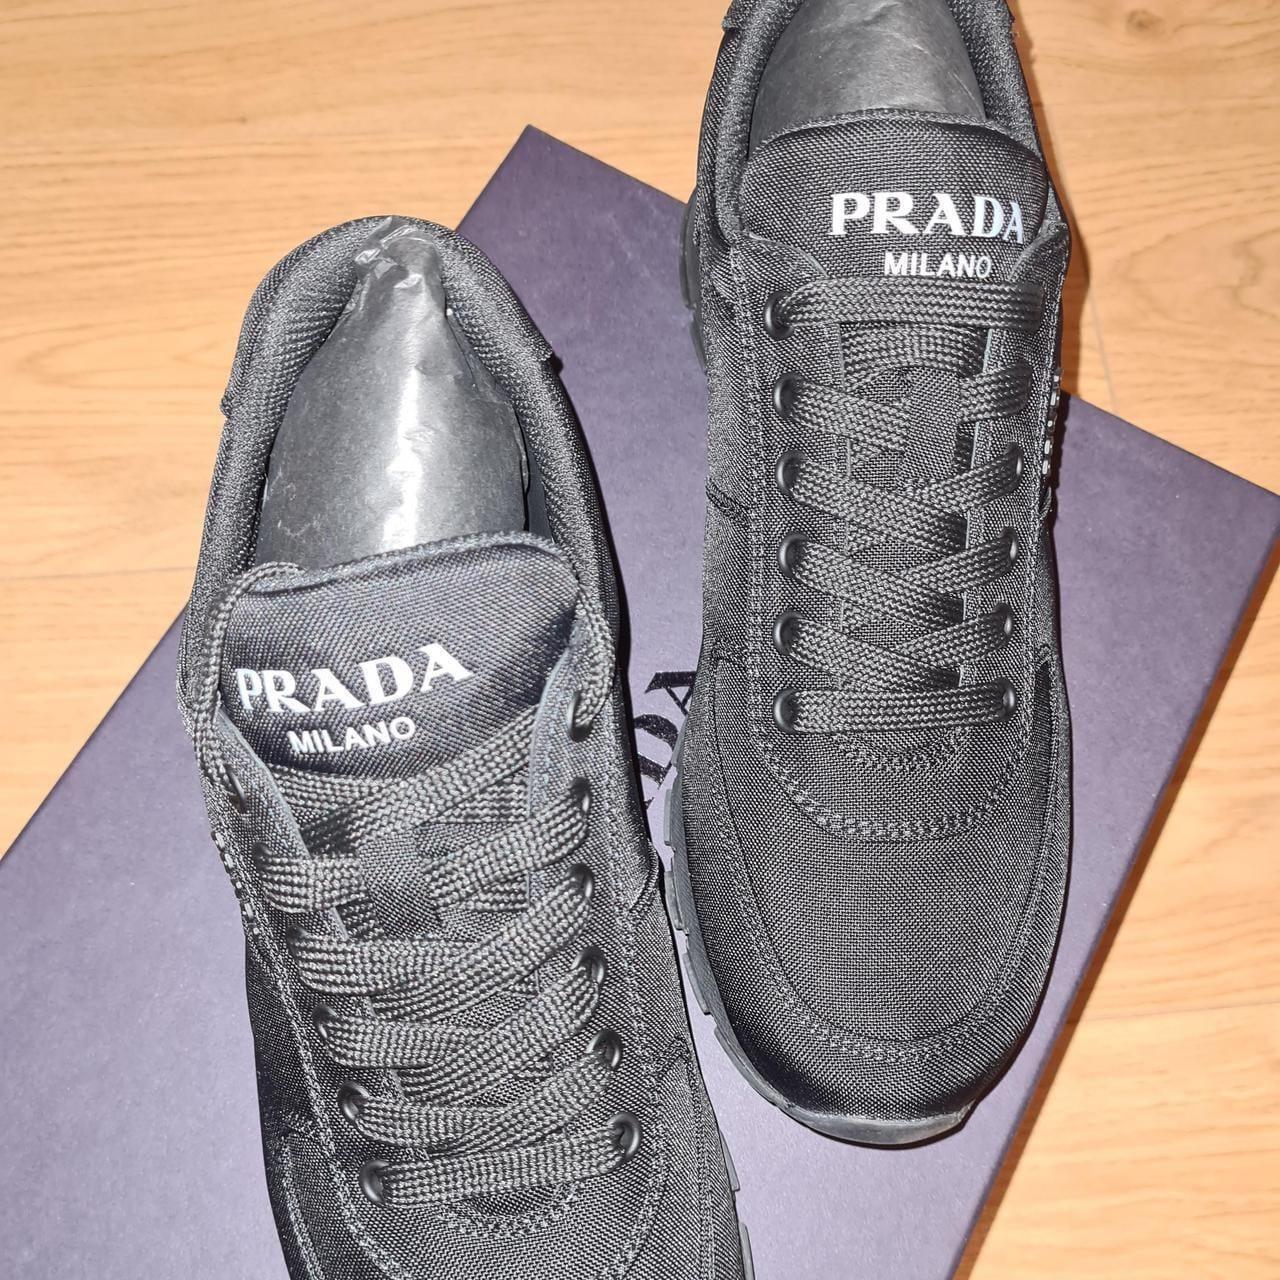 Prada runners Black/ Nero Brand new/ unworn Size... - Depop